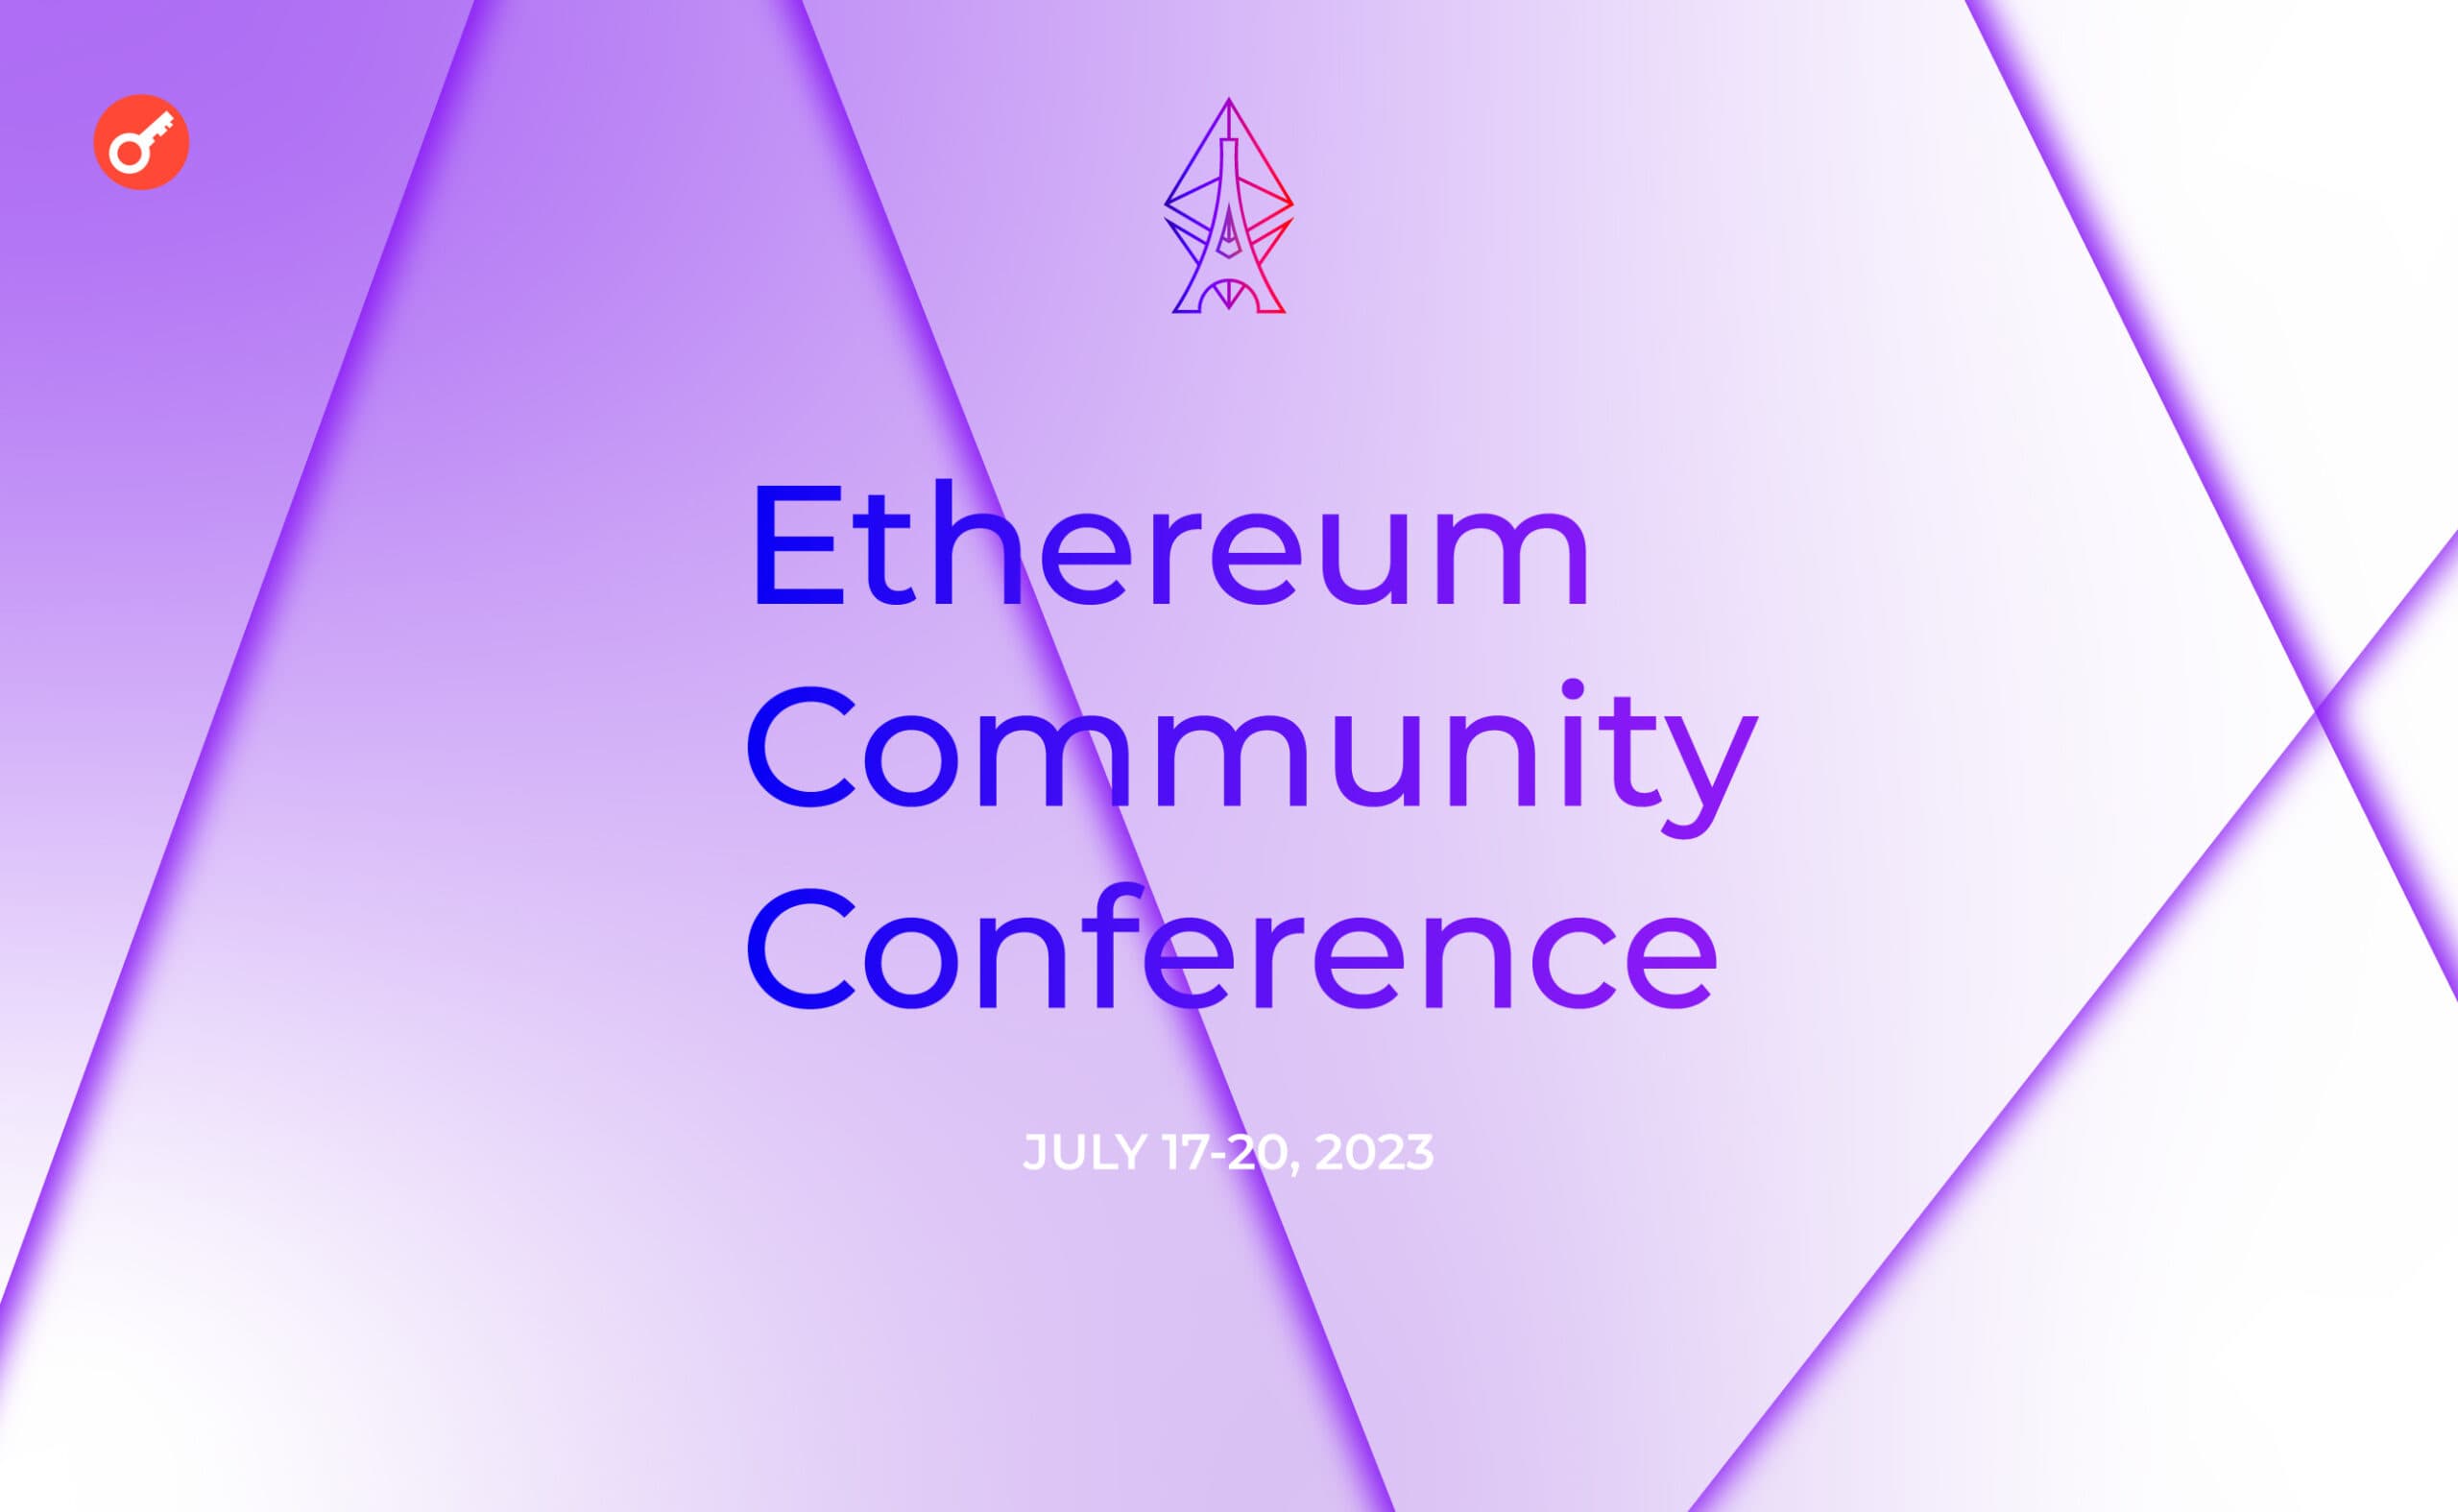 EthCC6: подробности и программа крупнейшей в Европе Ethereum конференции. Заглавный коллаж новости.